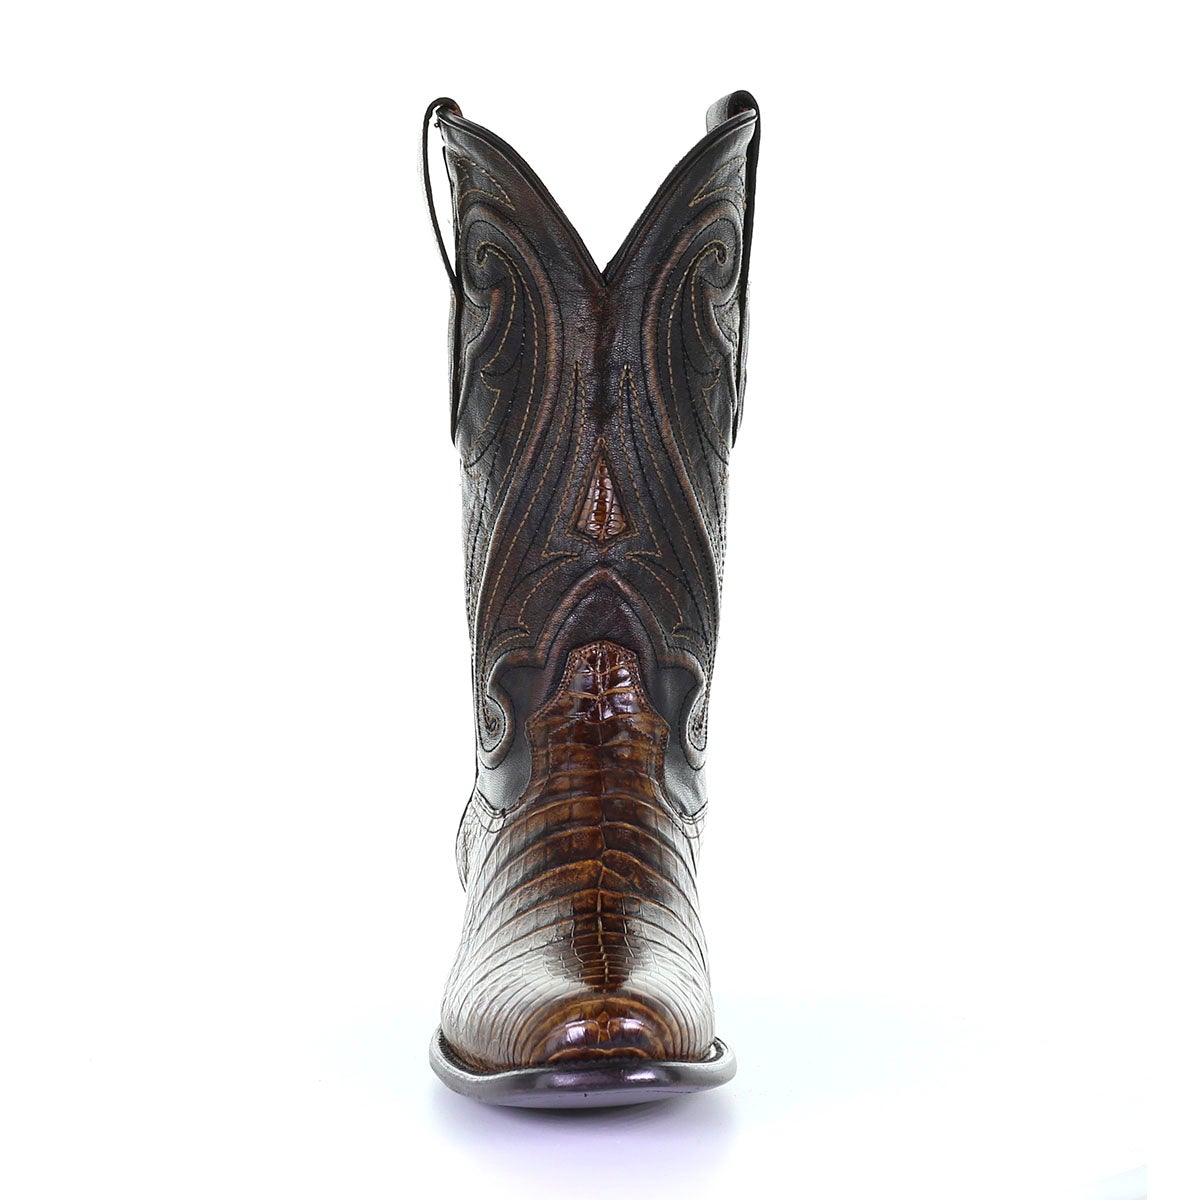 M2182 - Montana brown dress cowboy caiman boots for men-Kuet.us